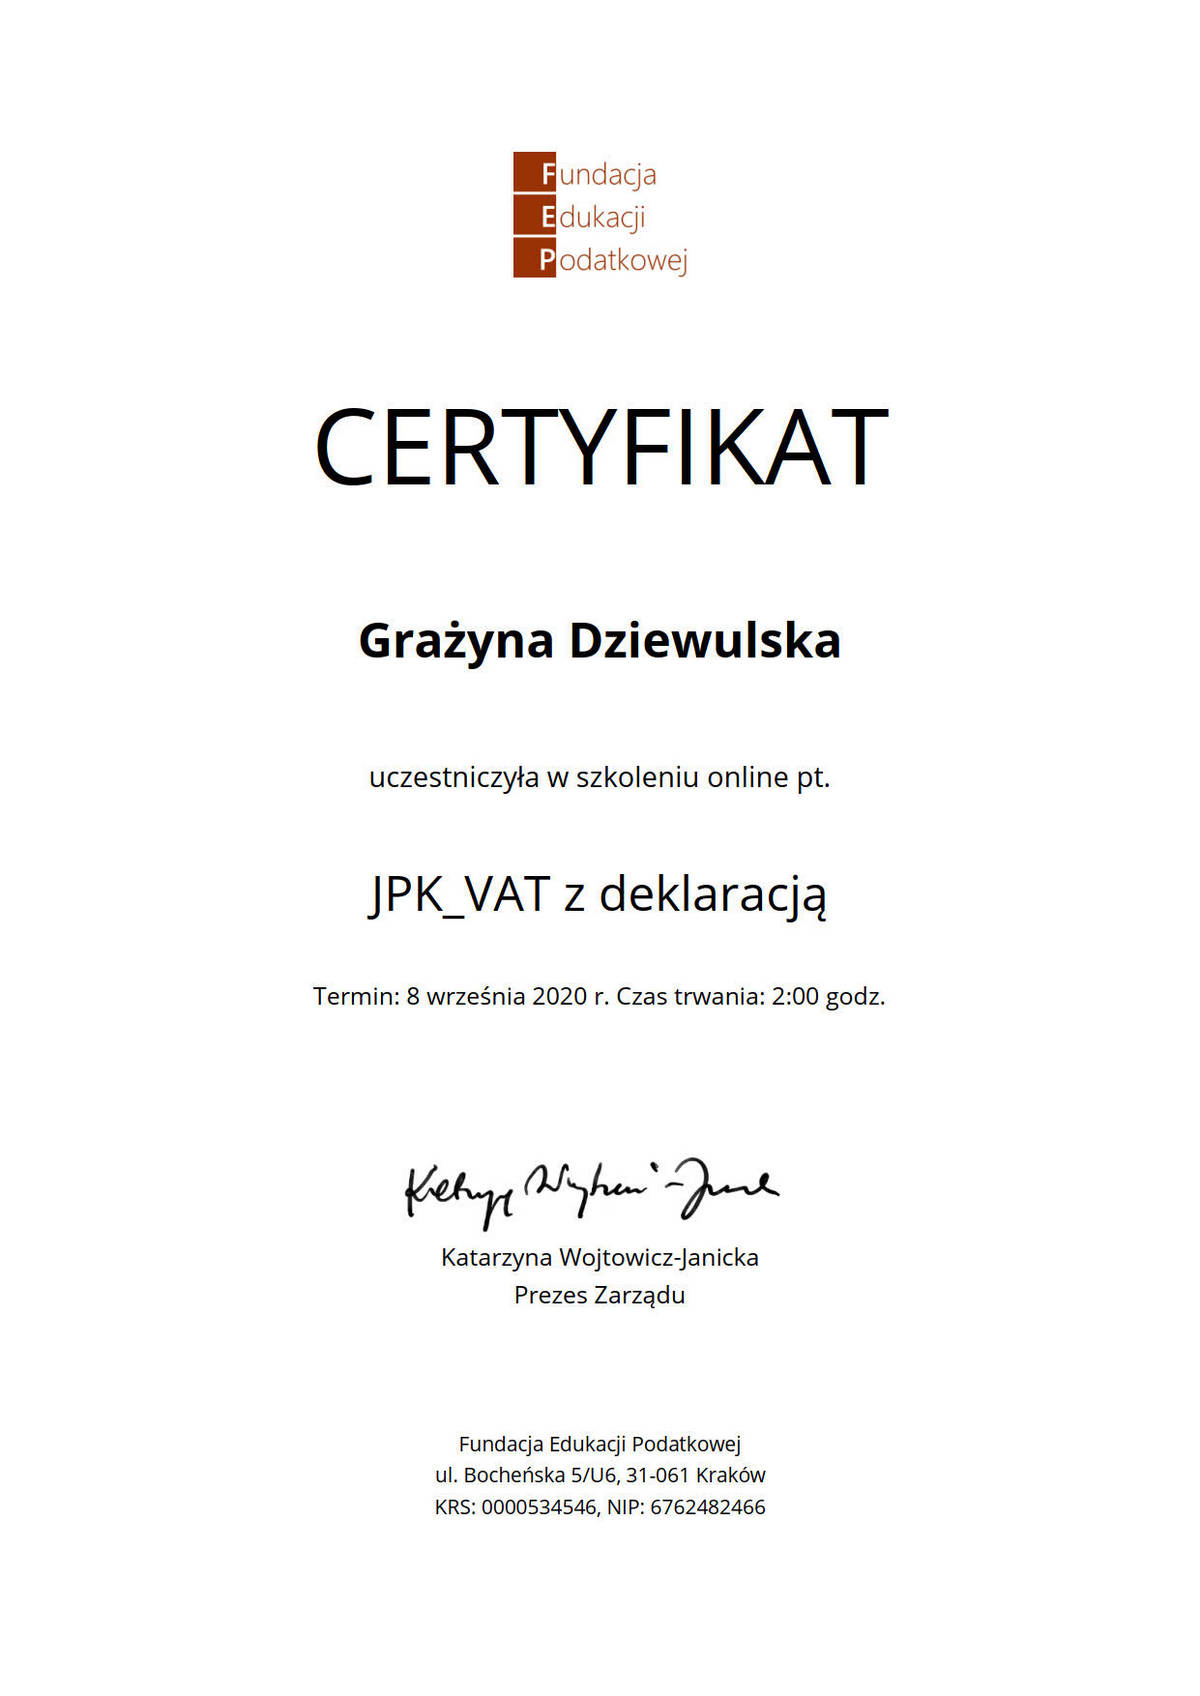 JPK_VAT z deklaracją - szkolenie Fundacja Edukacji Podatkowej